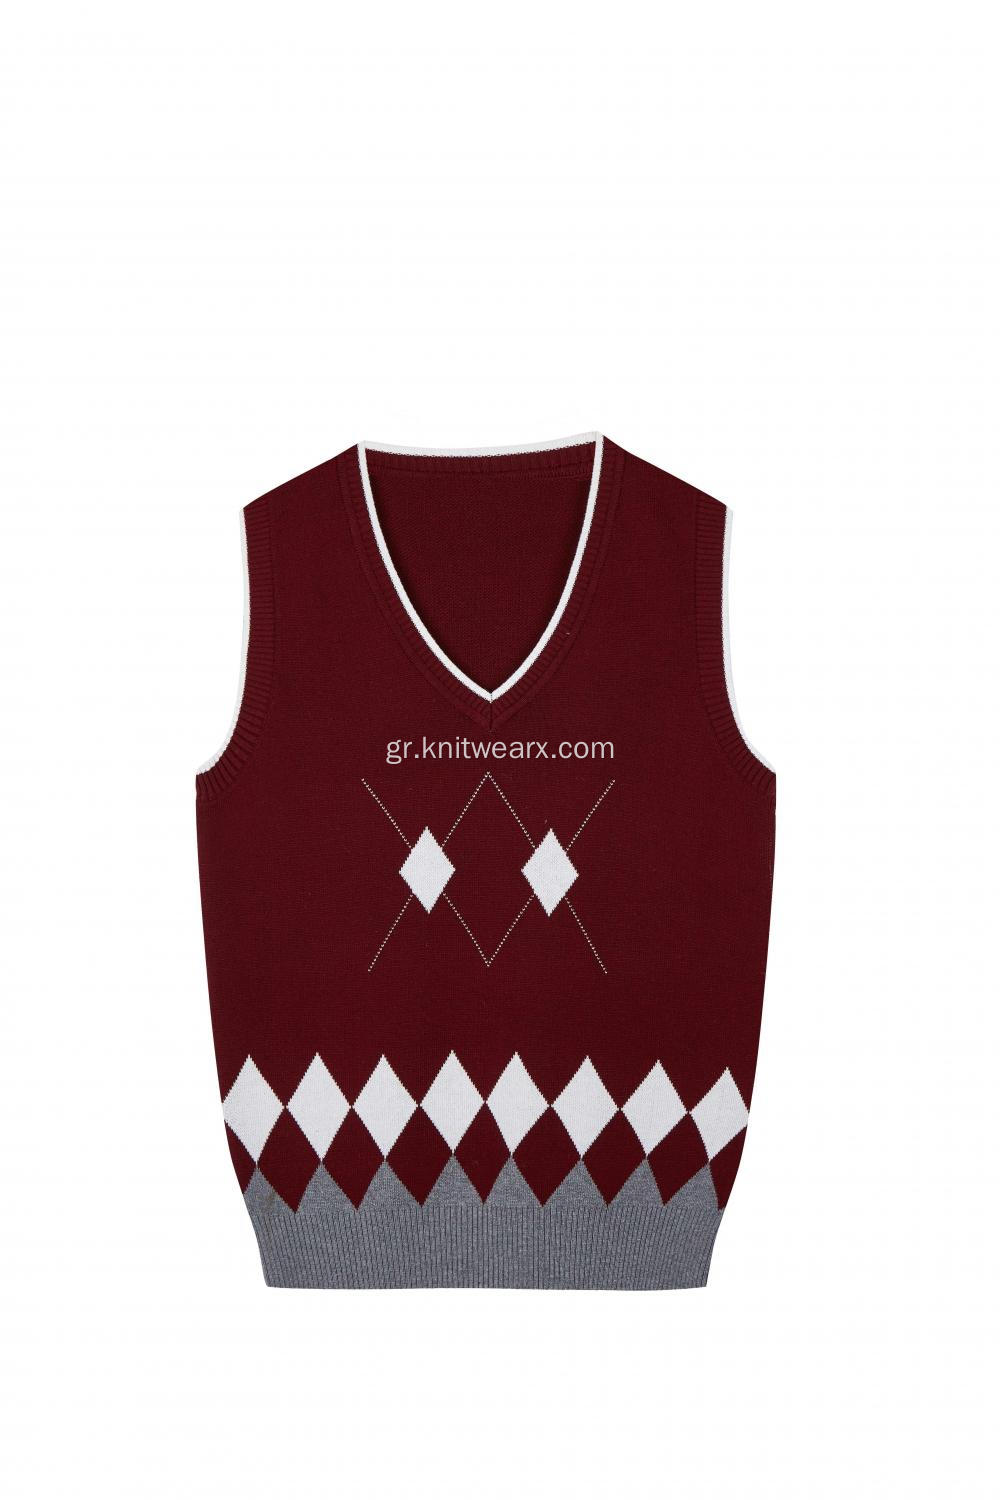 Boy's Knitted Diamond Jacquard Argyle School Vest